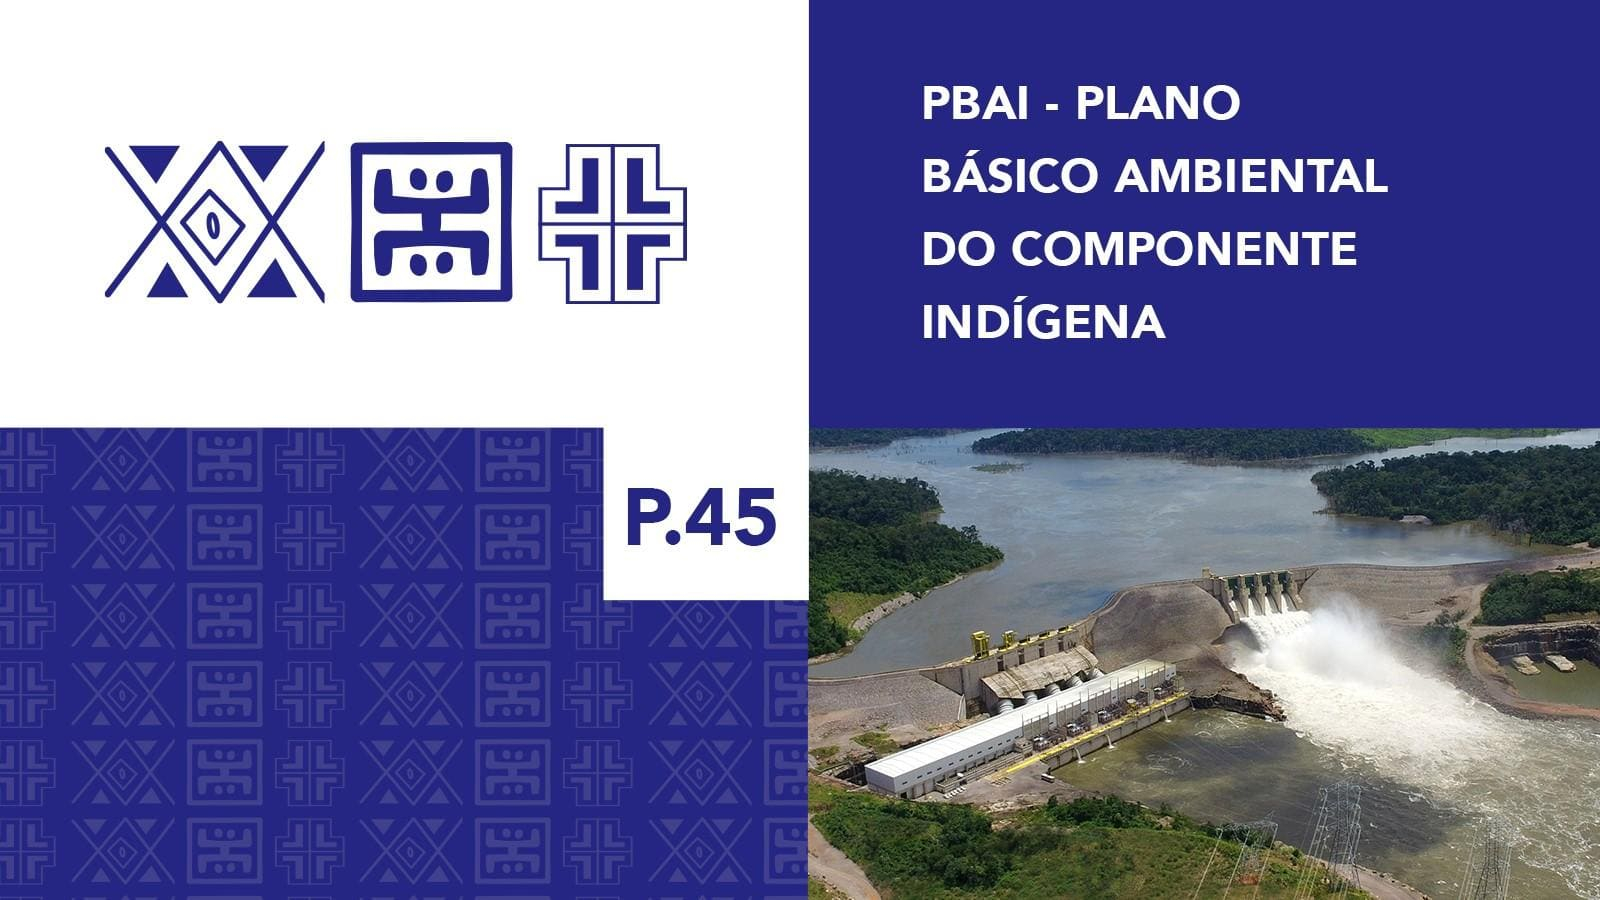 P.45 - Plano Básico Ambiental - Componente Indígena Apiaká